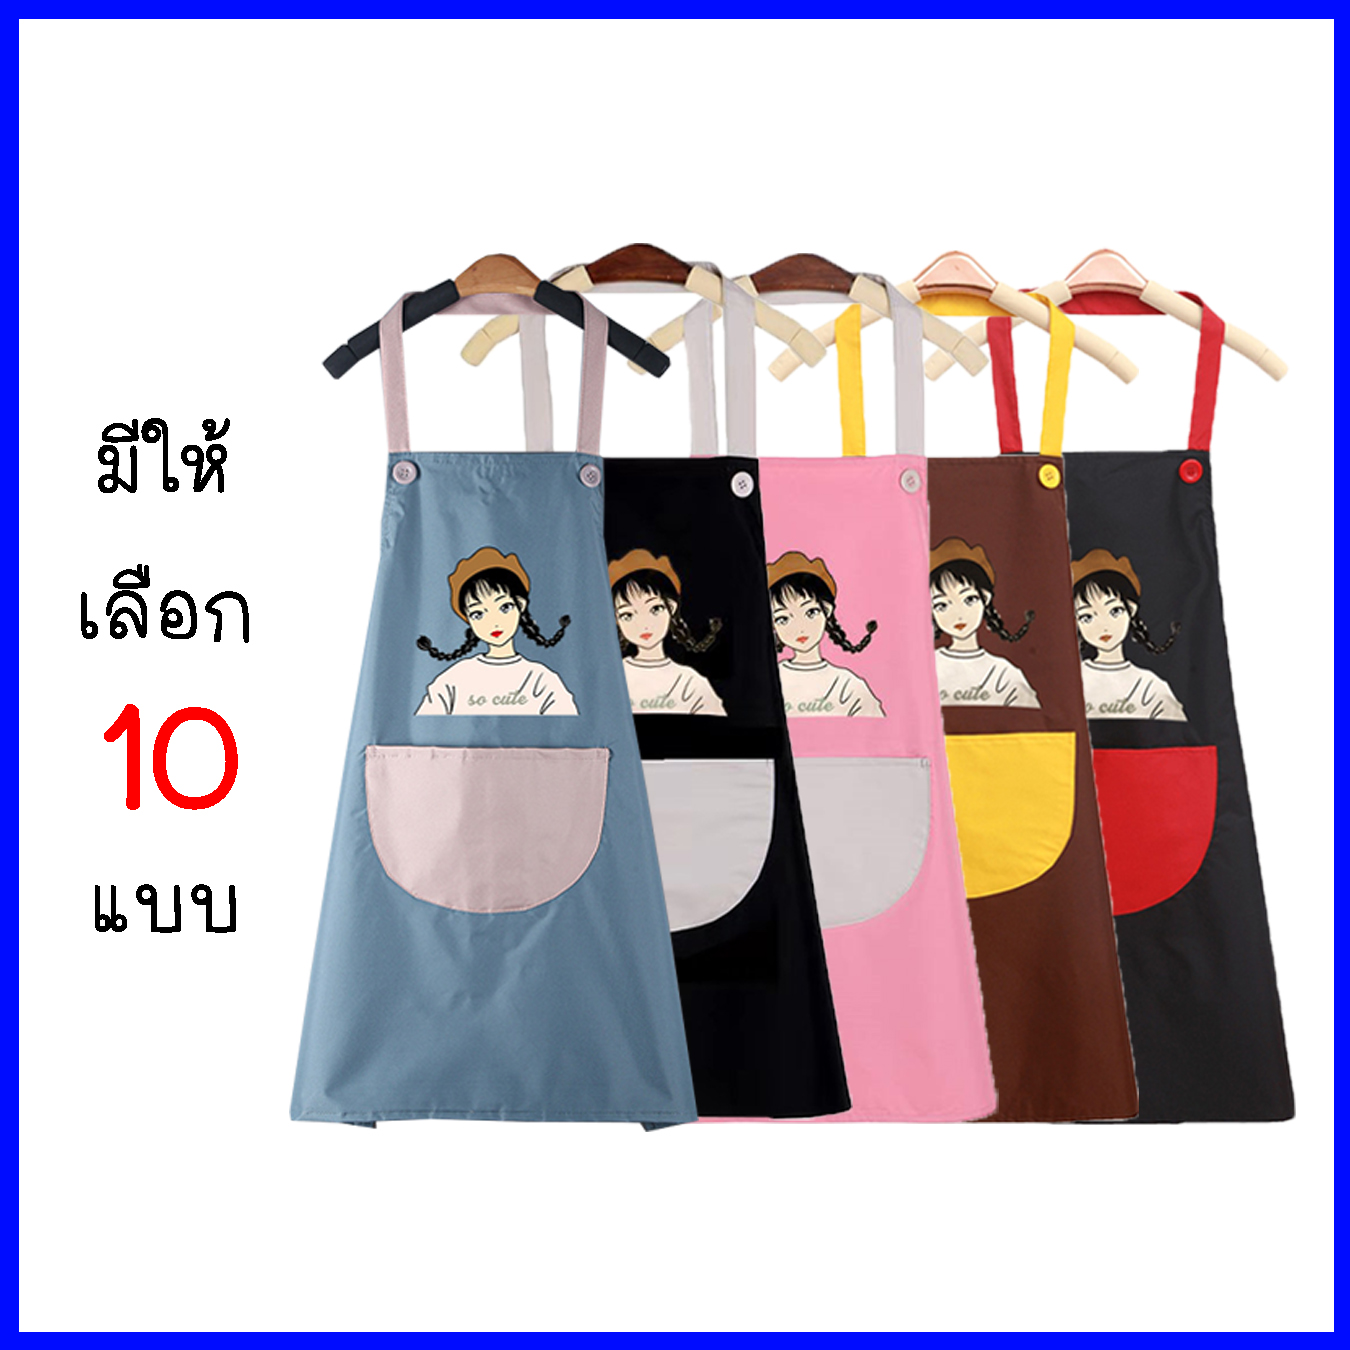 (10สี)ผ้ากันเปื้อนกันน้ำ ผ้ากันเปื้อนทําอาหาร ผ้ากันเปื้อนผู้หญิง ชุดกันเปื้อนสไตล์เกาหลี ผ้ากันเปื้อนลายการ์ตูน(E5)